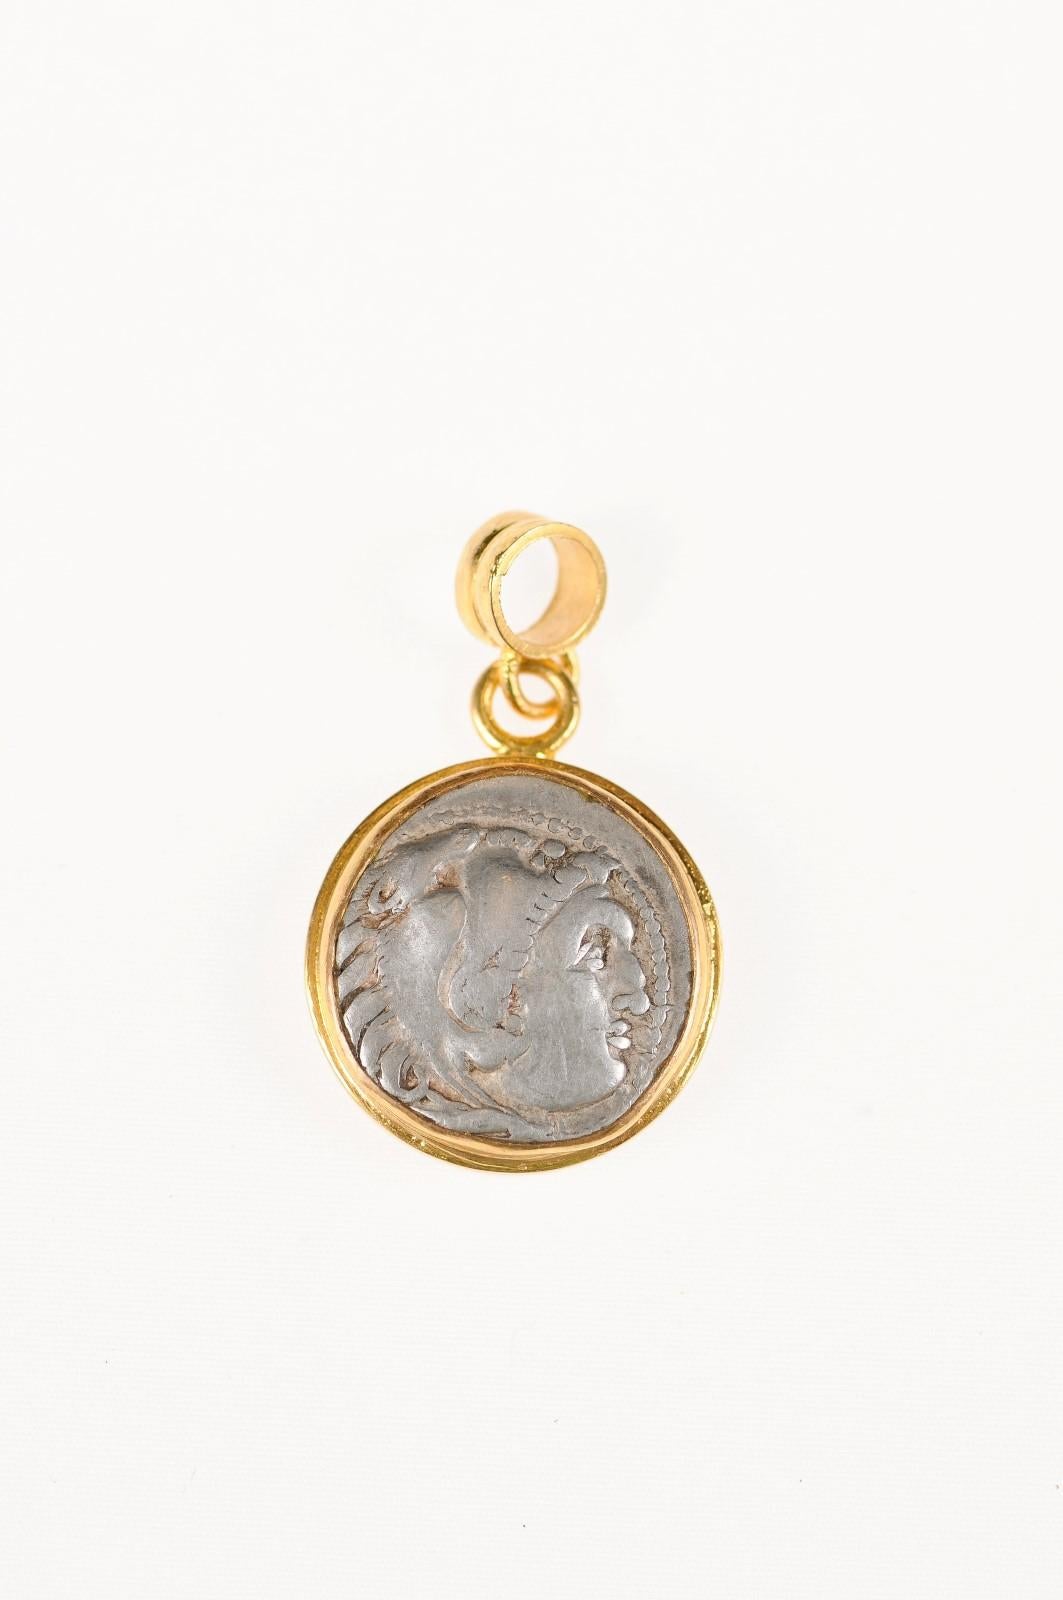 Authentique pièce grecque d'Alexander le Grand en drachme AR (vers le IIIe siècle av. J.-C.), sertie dans un chaton rond en or 22 carats avec une attache en or 22 carats. L'avers, ou face, de cette pièce représente la tête d'Héraklès portant une